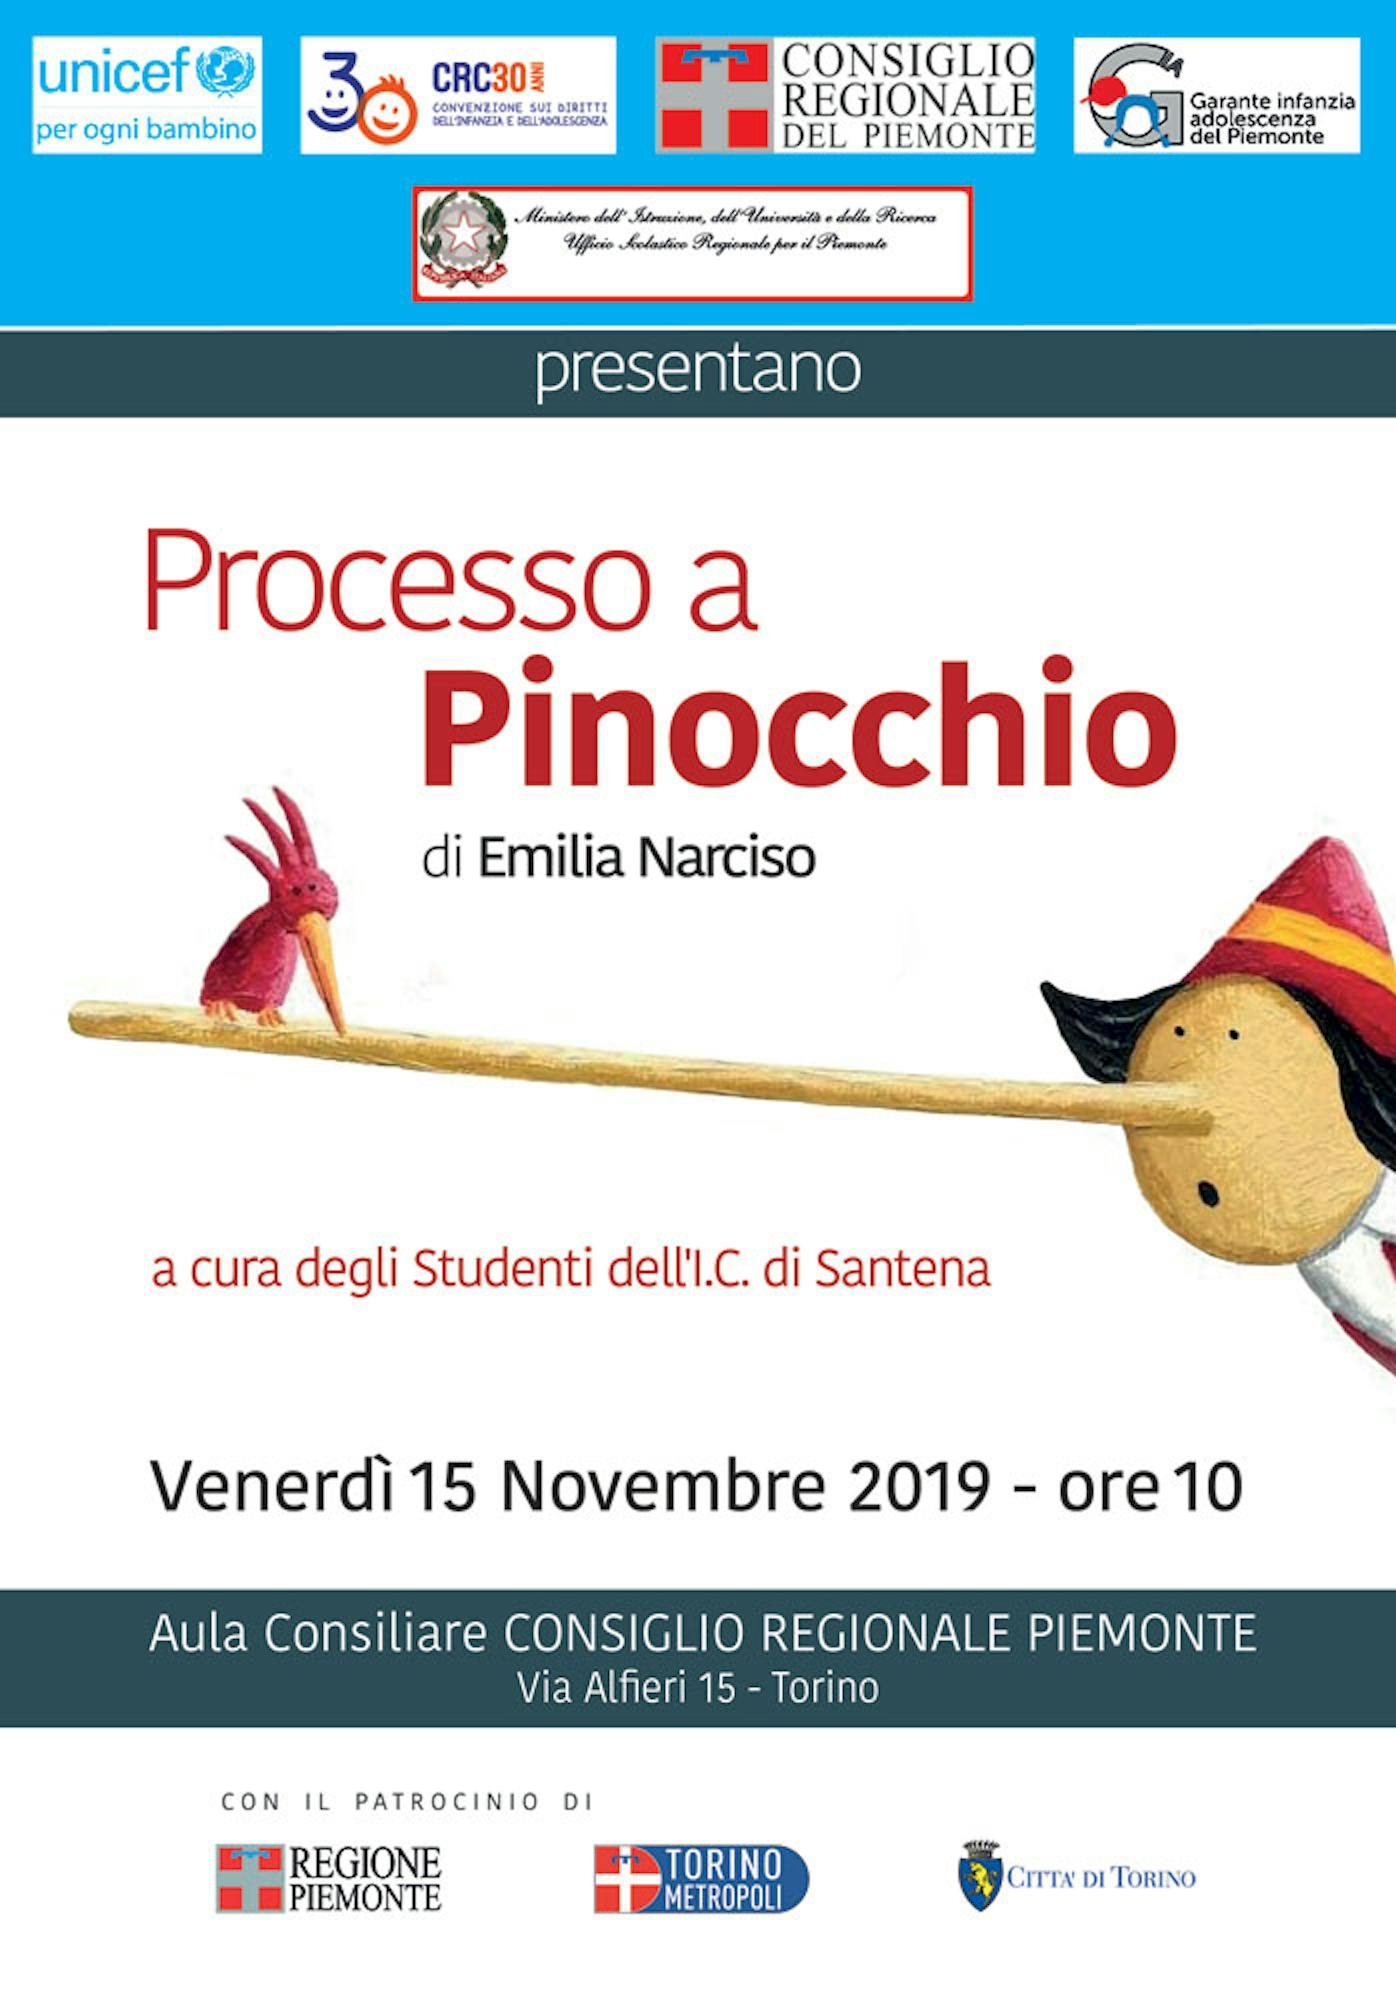 Processo a Pinocchio nell'Aula del Consiglio Regionale Piemonte a Torino per celebrare i diritti dei bambini